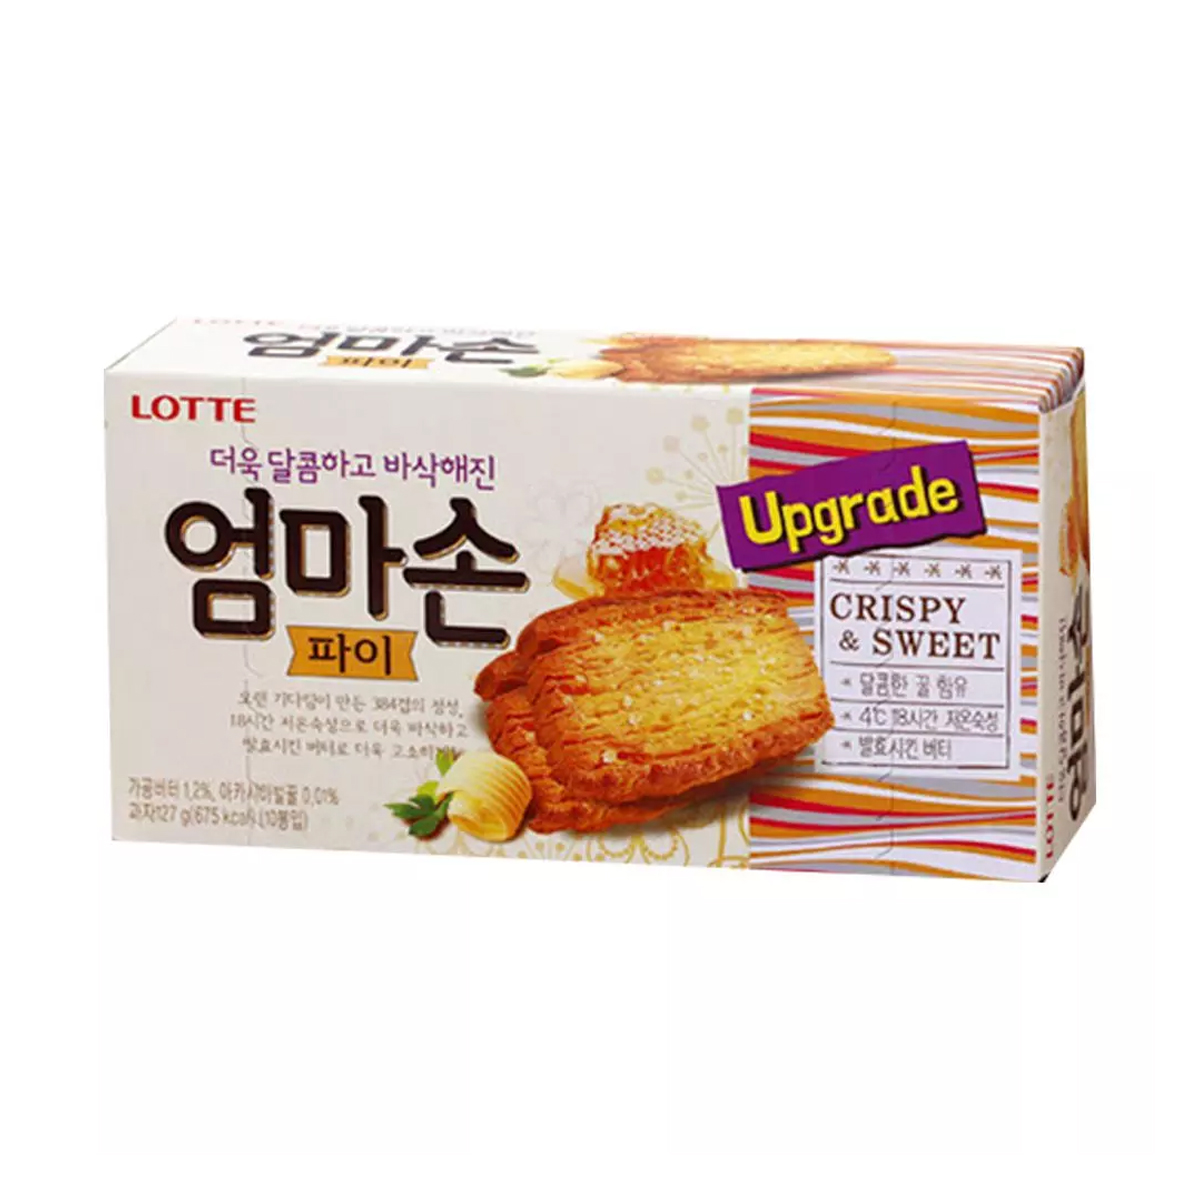 Biscoito Folhado de Manteiga e Mel Umma Son Pie Lotte - 127 gramas